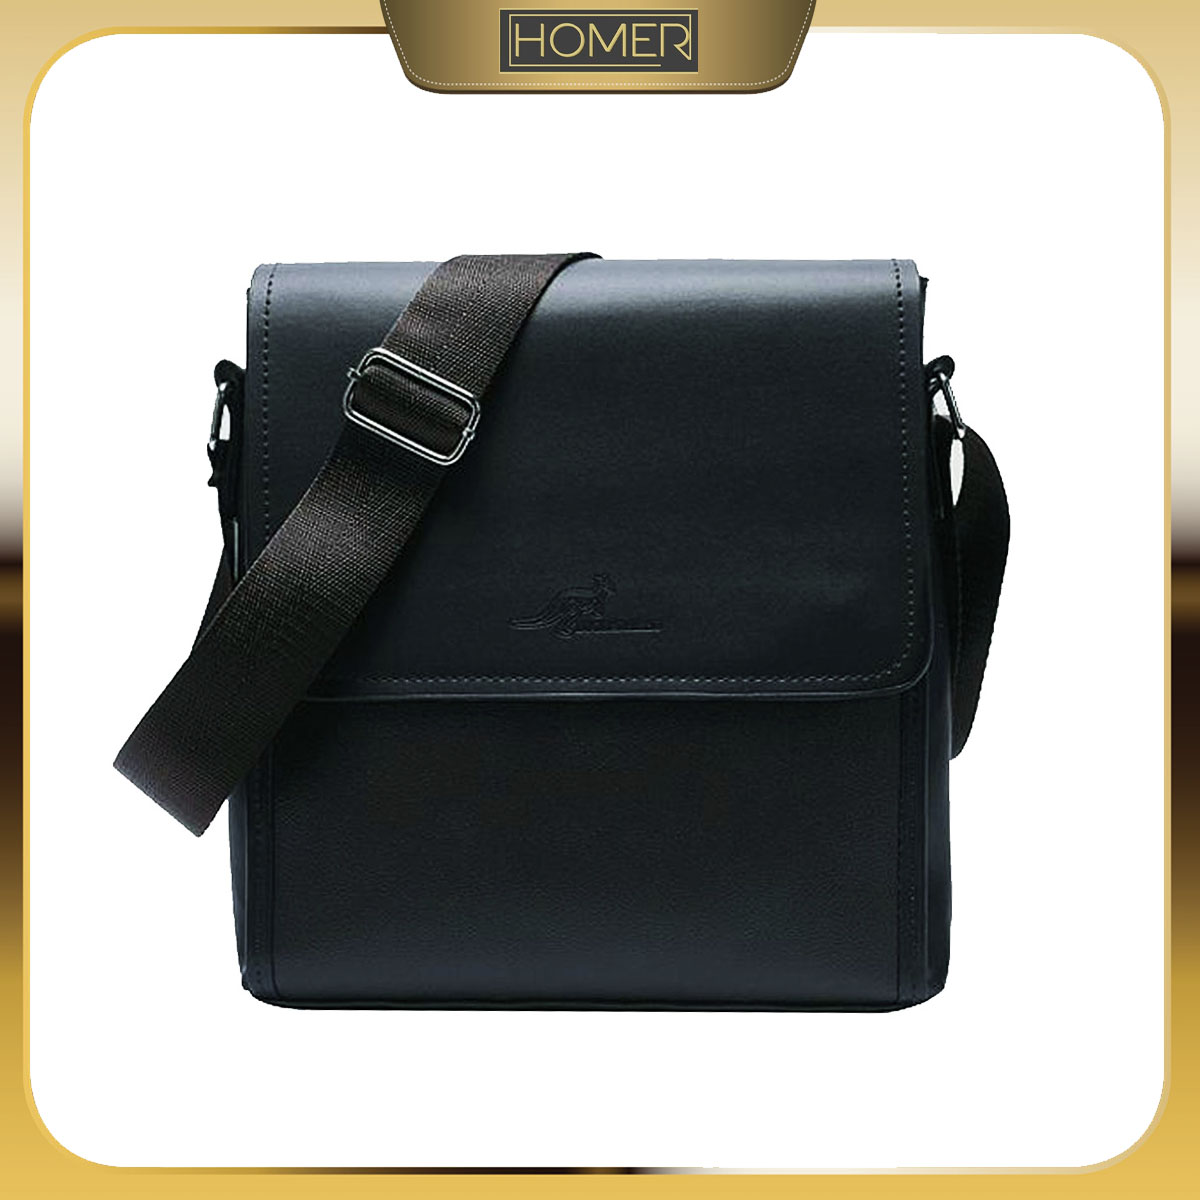 Homer Rondel Leather Sling Bag for Men